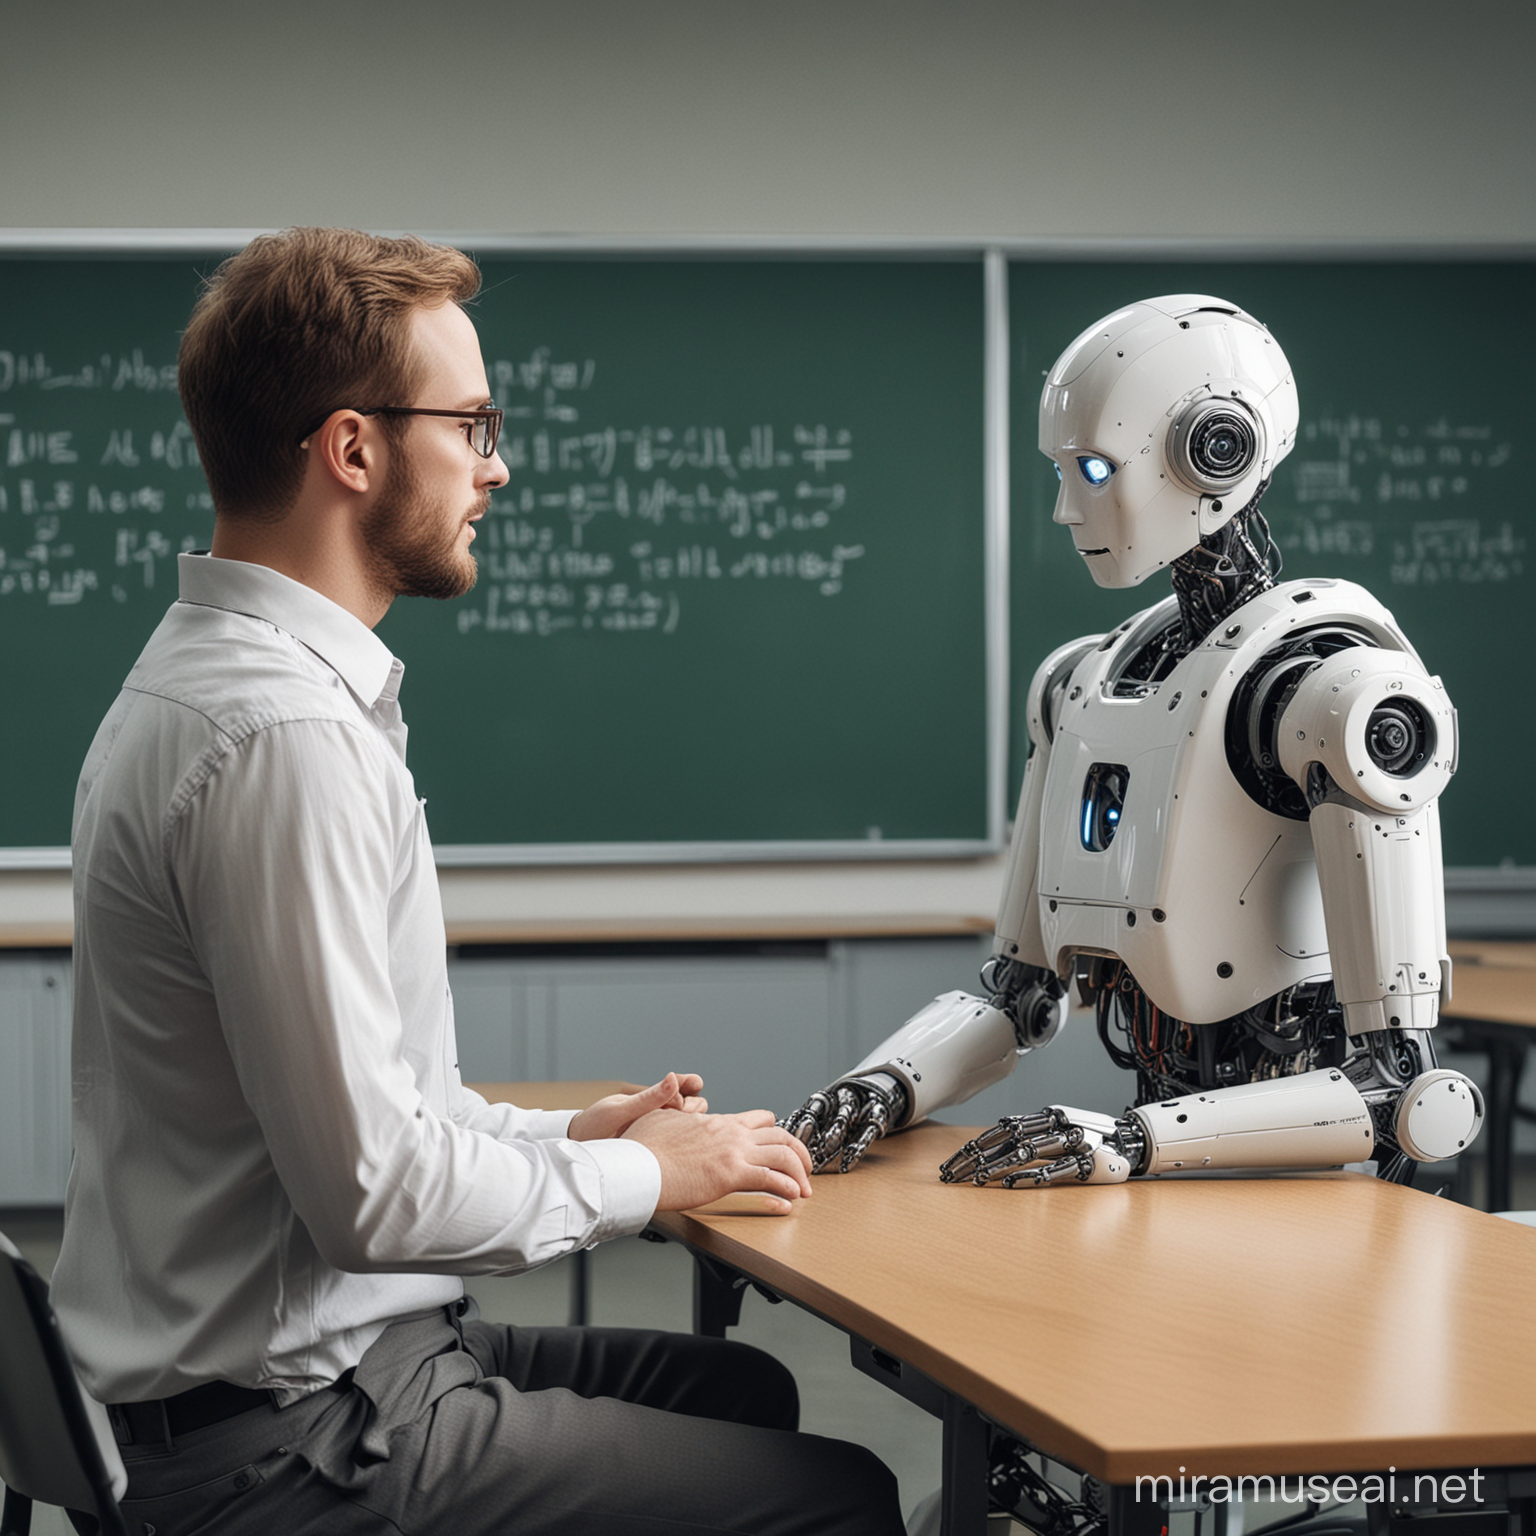 Un robot qui explique une matière à un homme dans une salle de classe au tableau